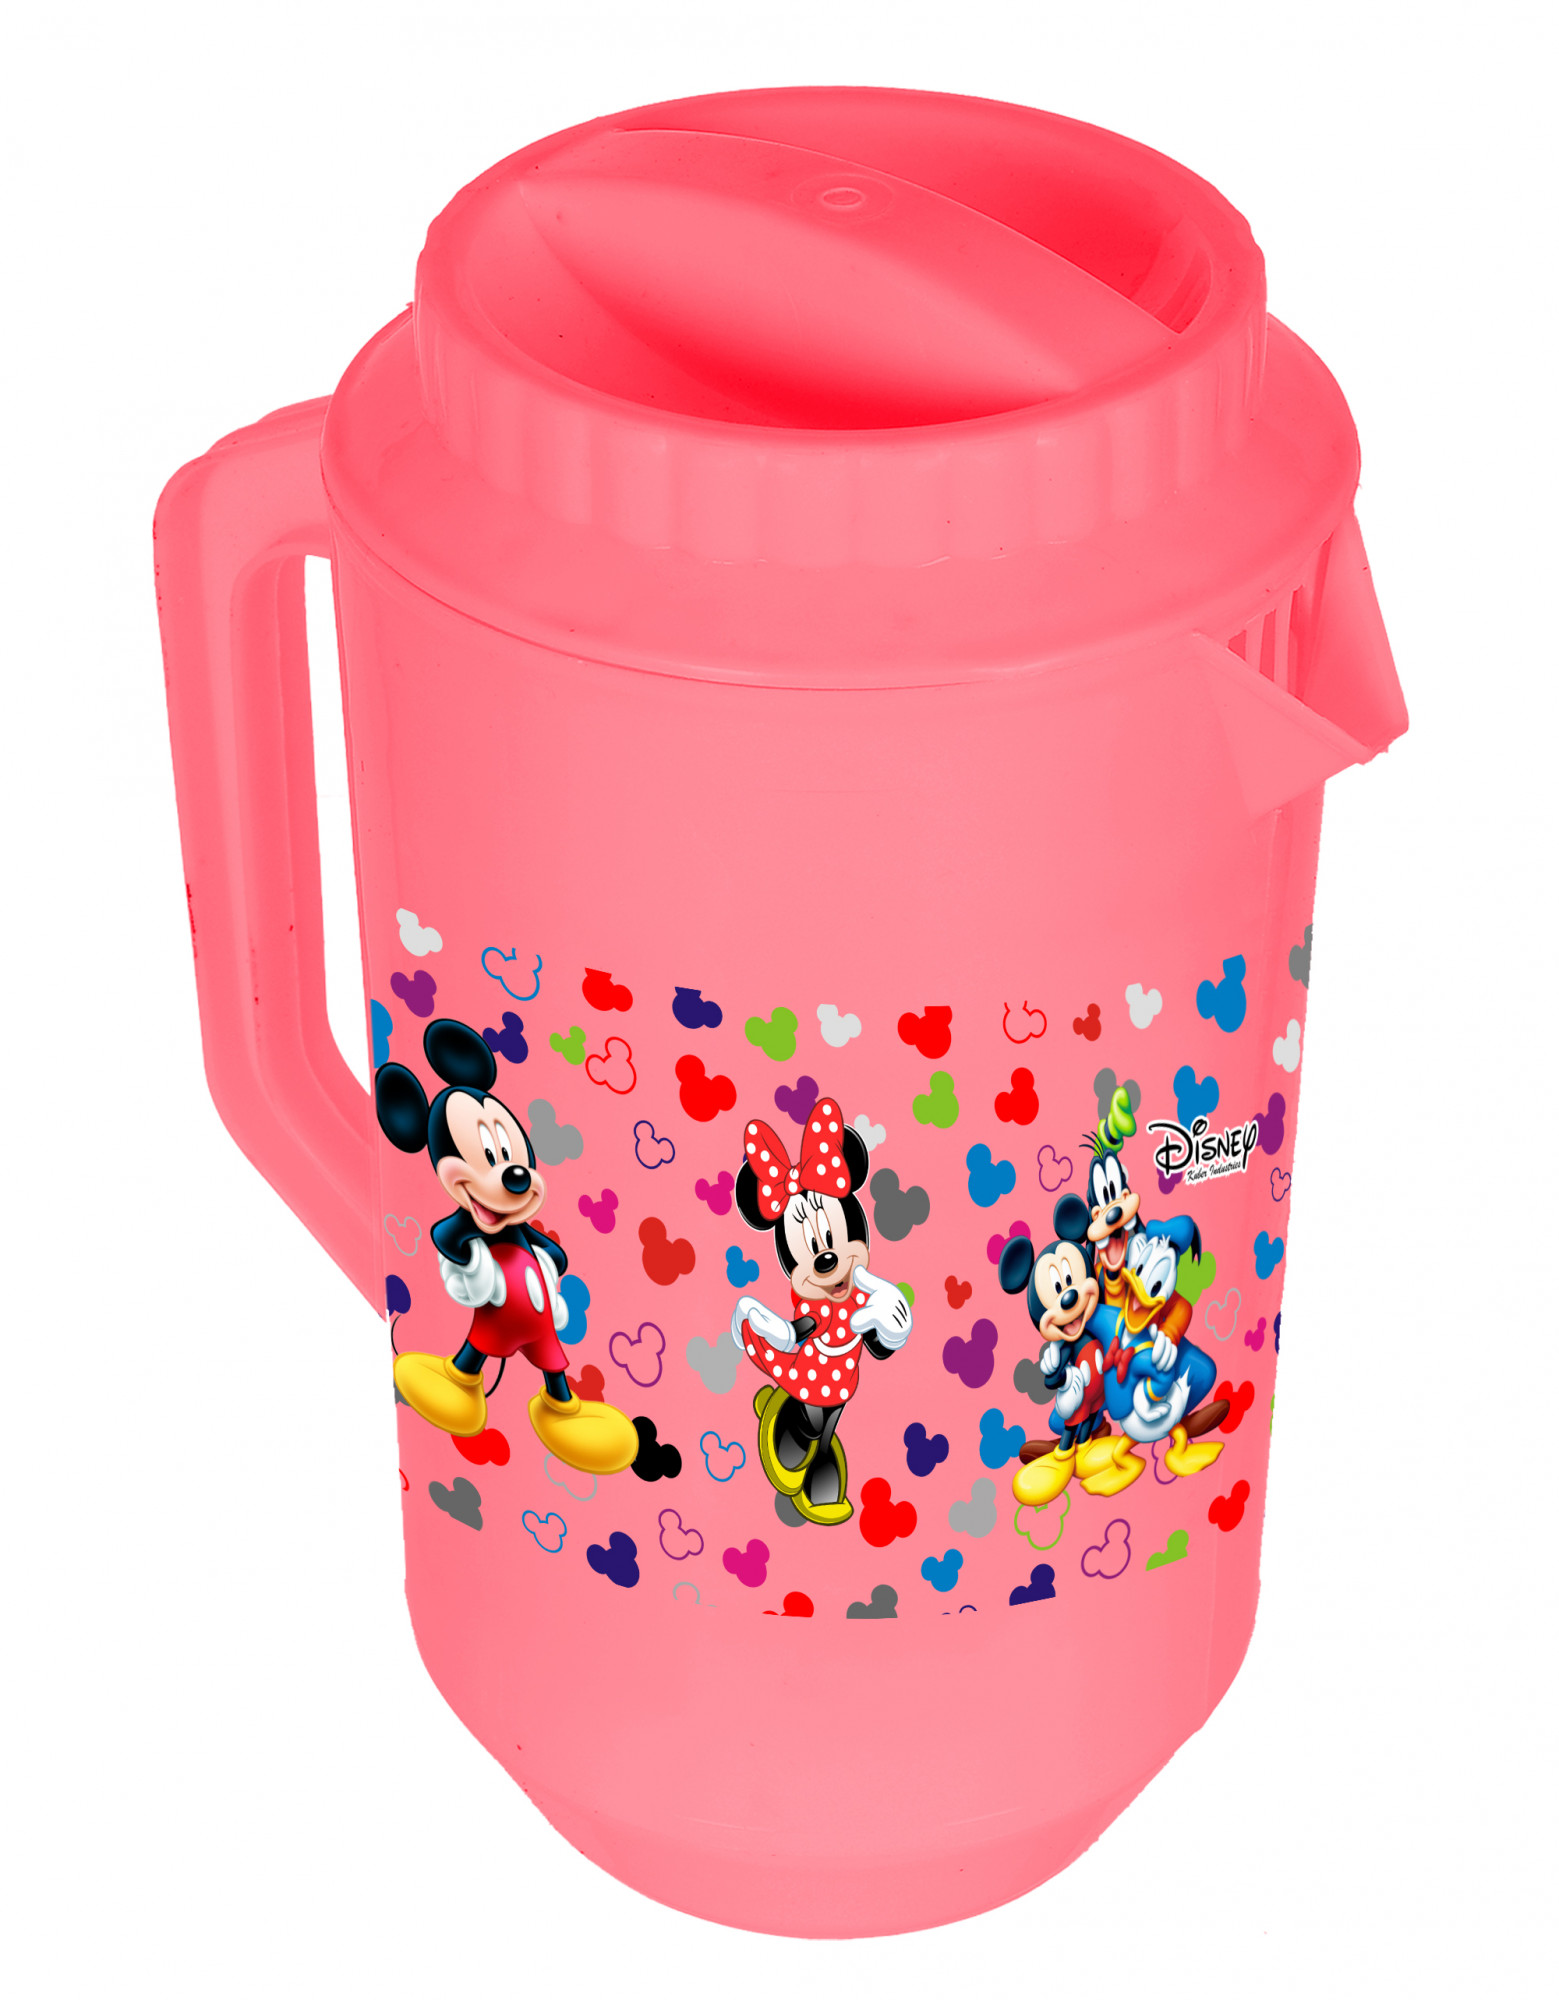 Kuber Industries Disney Team Mickey Print Unbreakable Multipurpose Plastic Water & Juice Jug With Lid,2 Ltr (Pink)